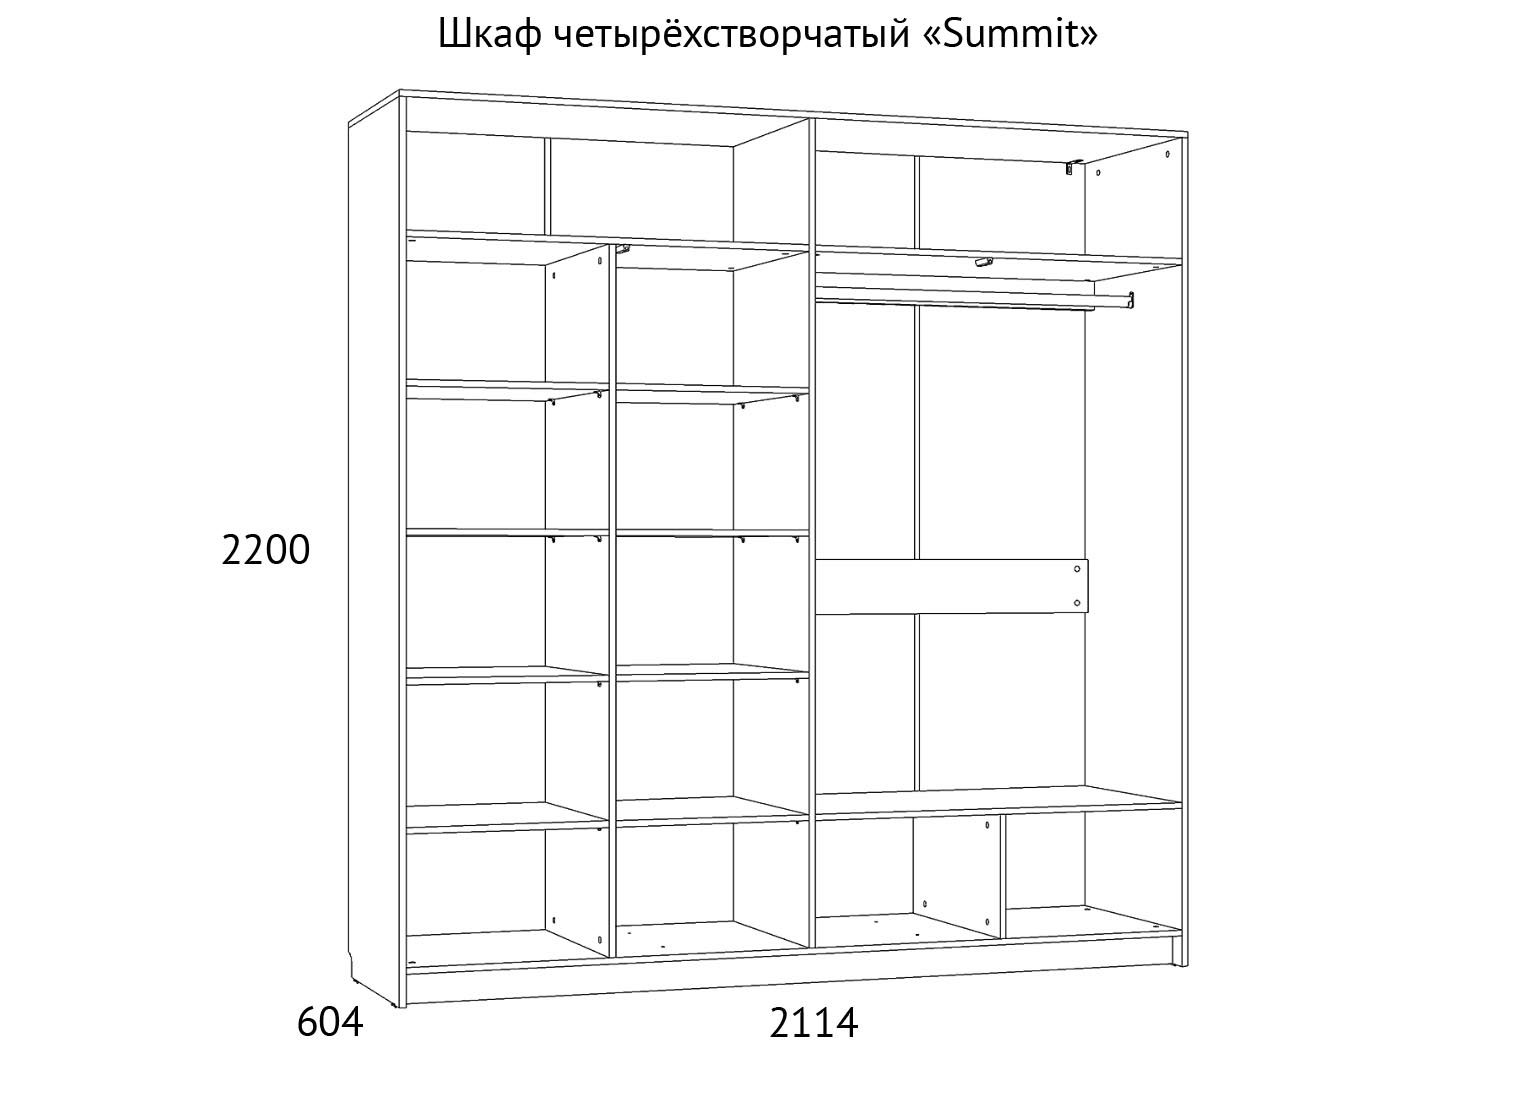 НМ 011.45 Шкаф комбинированный Summit схема Мебель Краснодар